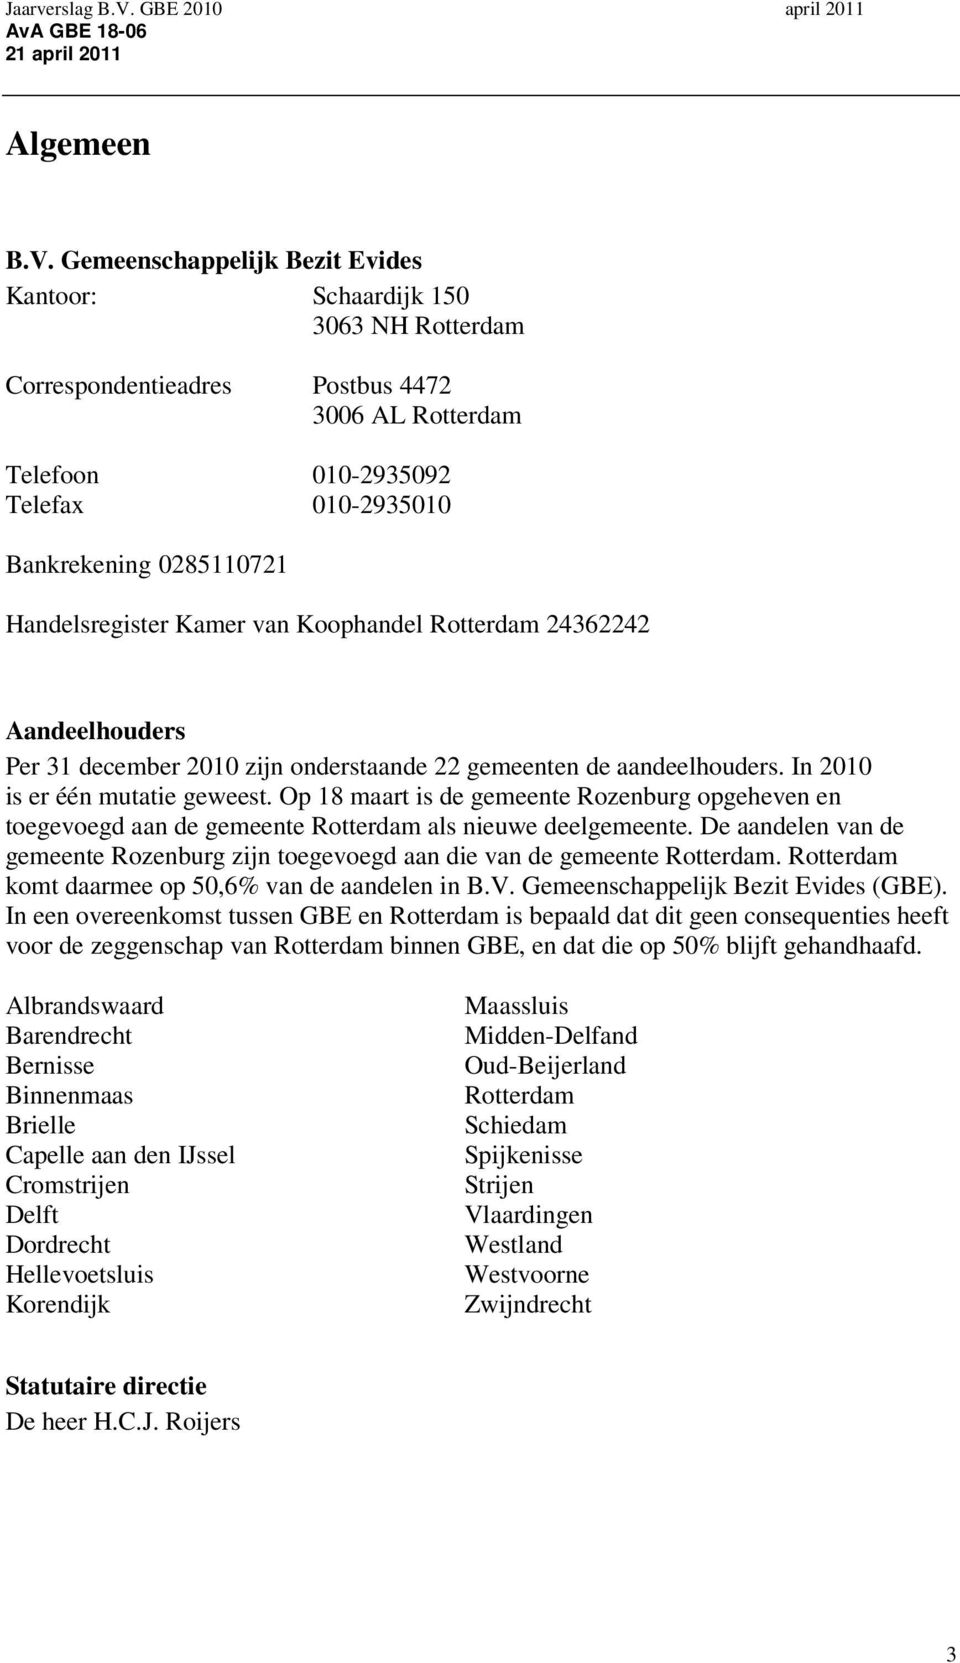 Handelsregister Kamer van Koophandel Rotterdam 24362242 Aandeelhouders Per 31 december 2010 zijn onderstaande 22 gemeenten de aandeelhouders. In 2010 is er één mutatie geweest.